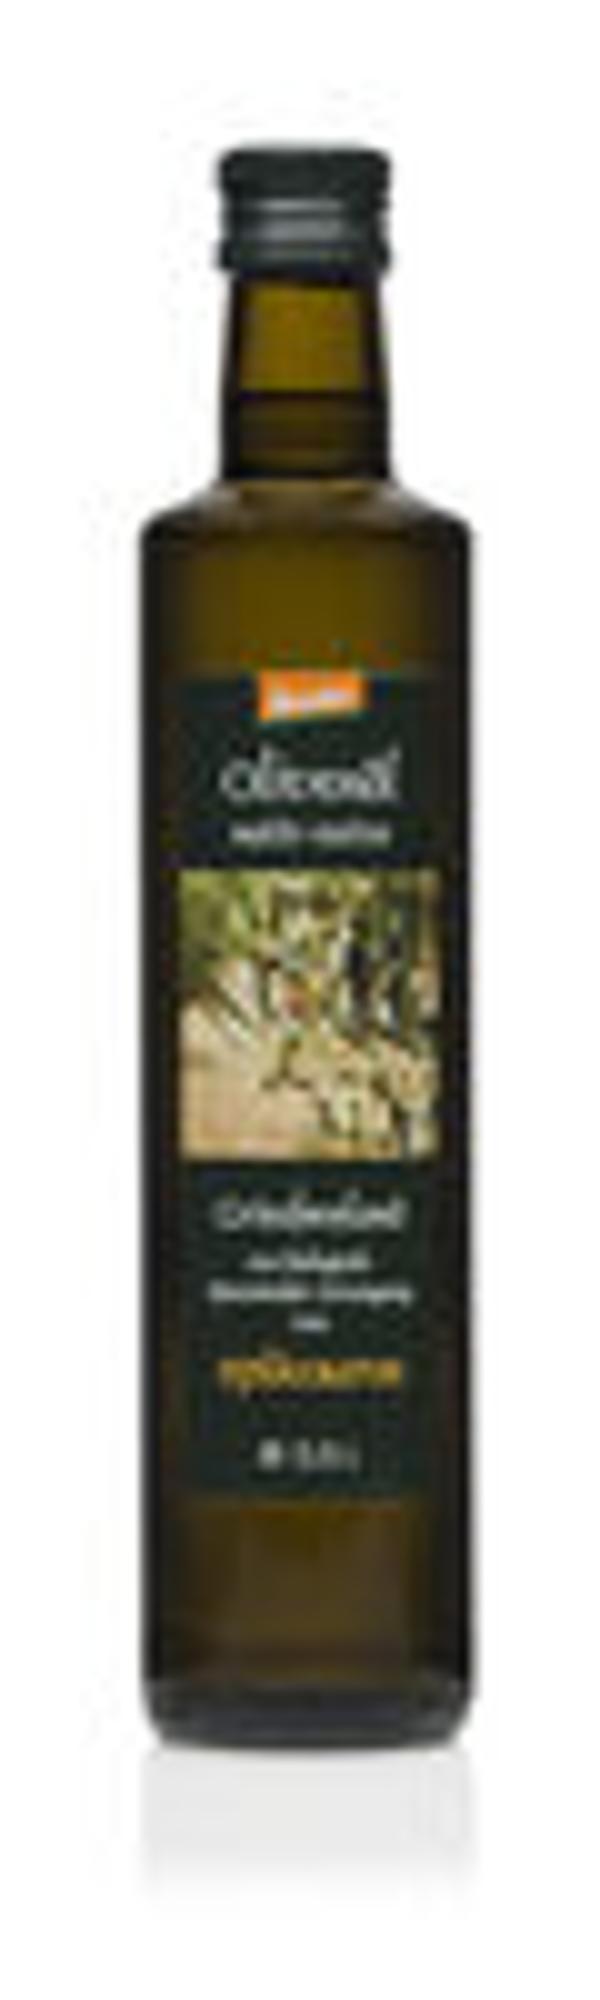 Produktfoto zu Olivenöl Demeter 500ml